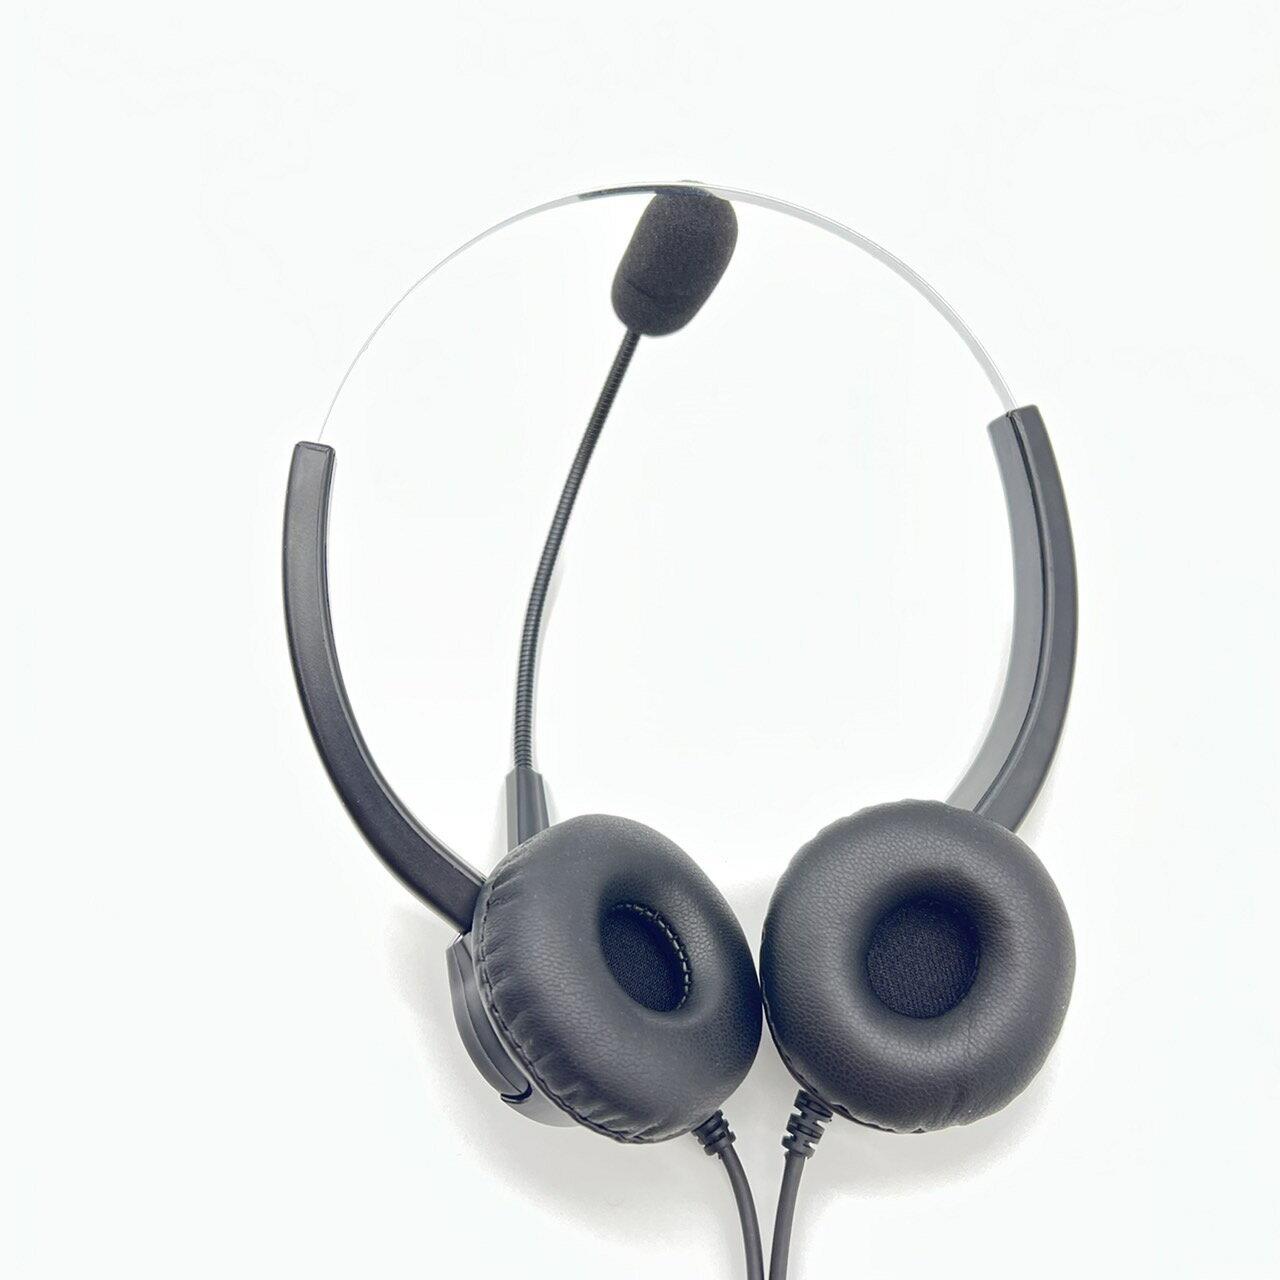 降噪耳機麥克風 fanvil 電話專用 專業抗噪耳麥 雙耳抗噪降噪